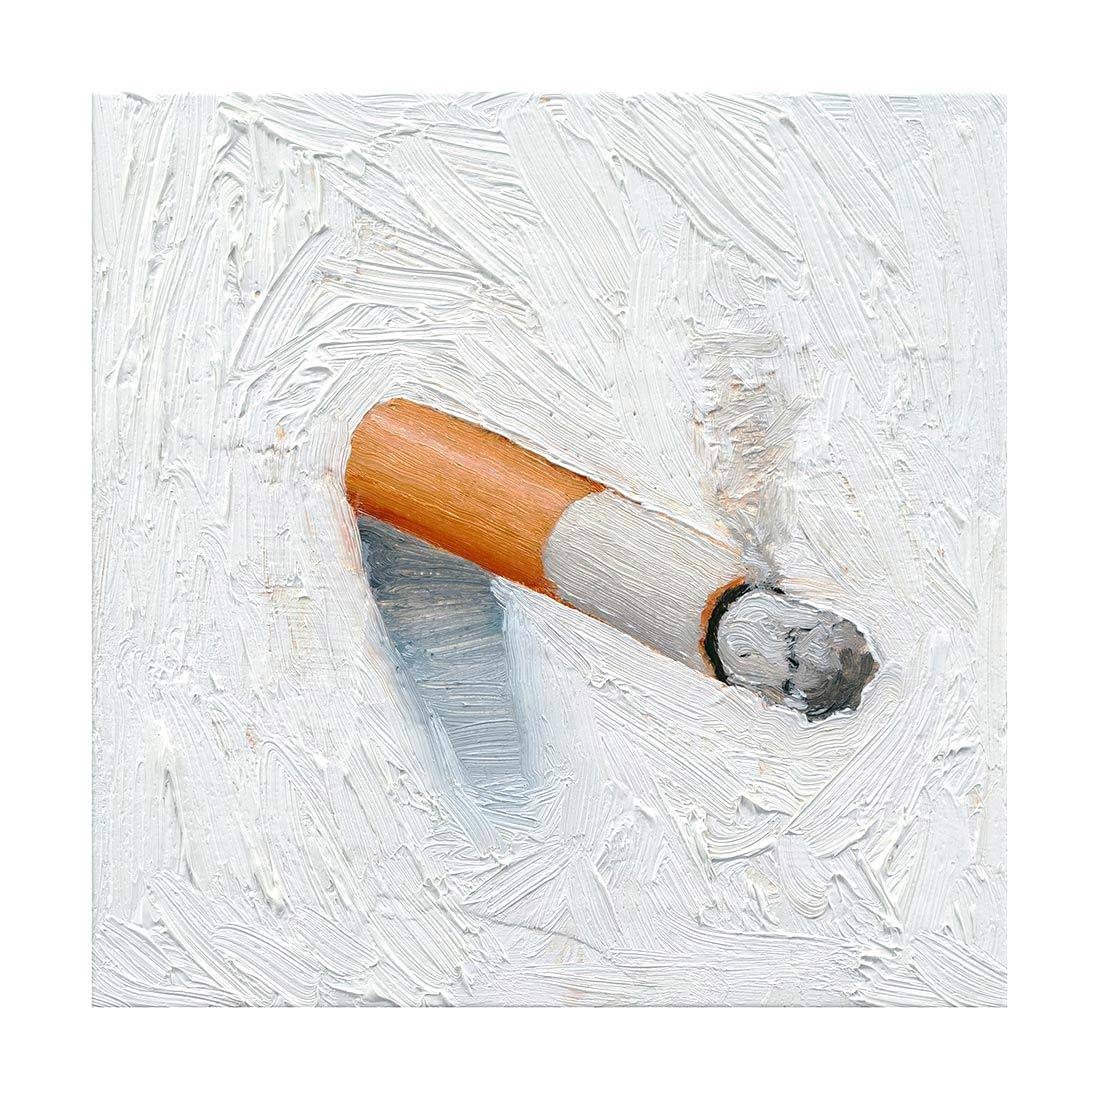 Cigarette Study No. 7